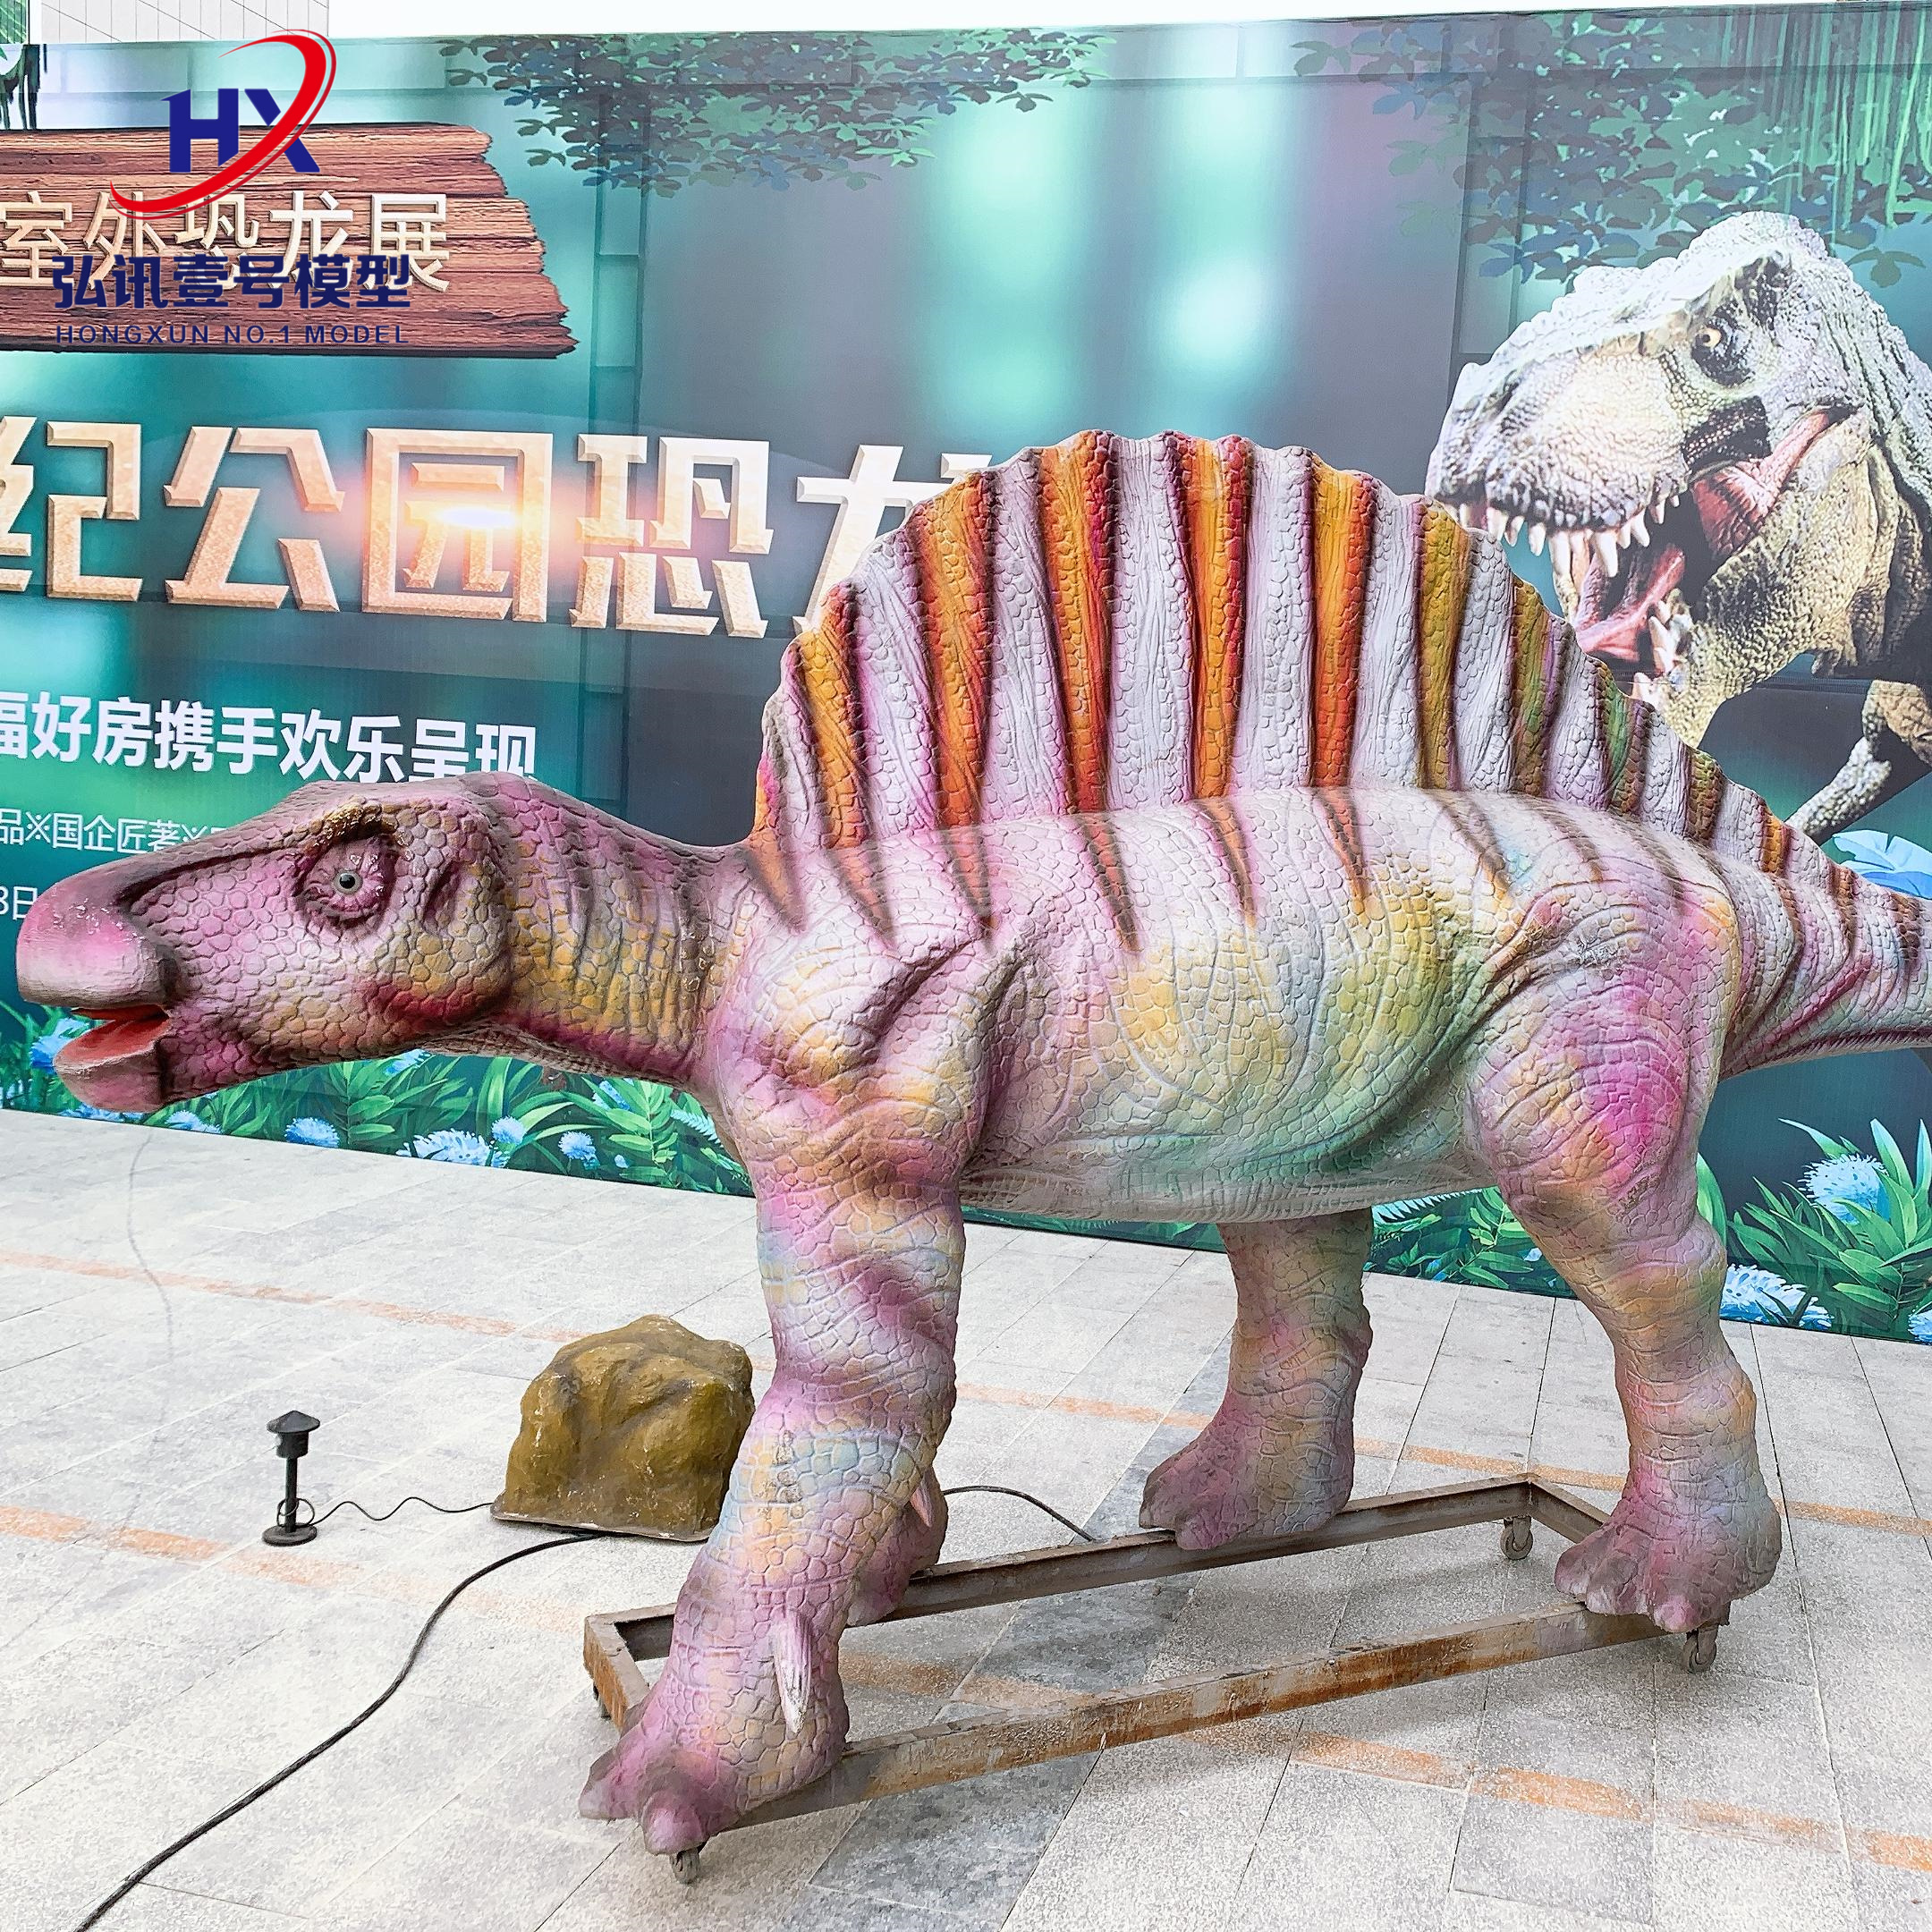 定制景区互动展览大型恐龙模型公园会动的恐龙摆件提供设计 仿真恐龙厂家图片